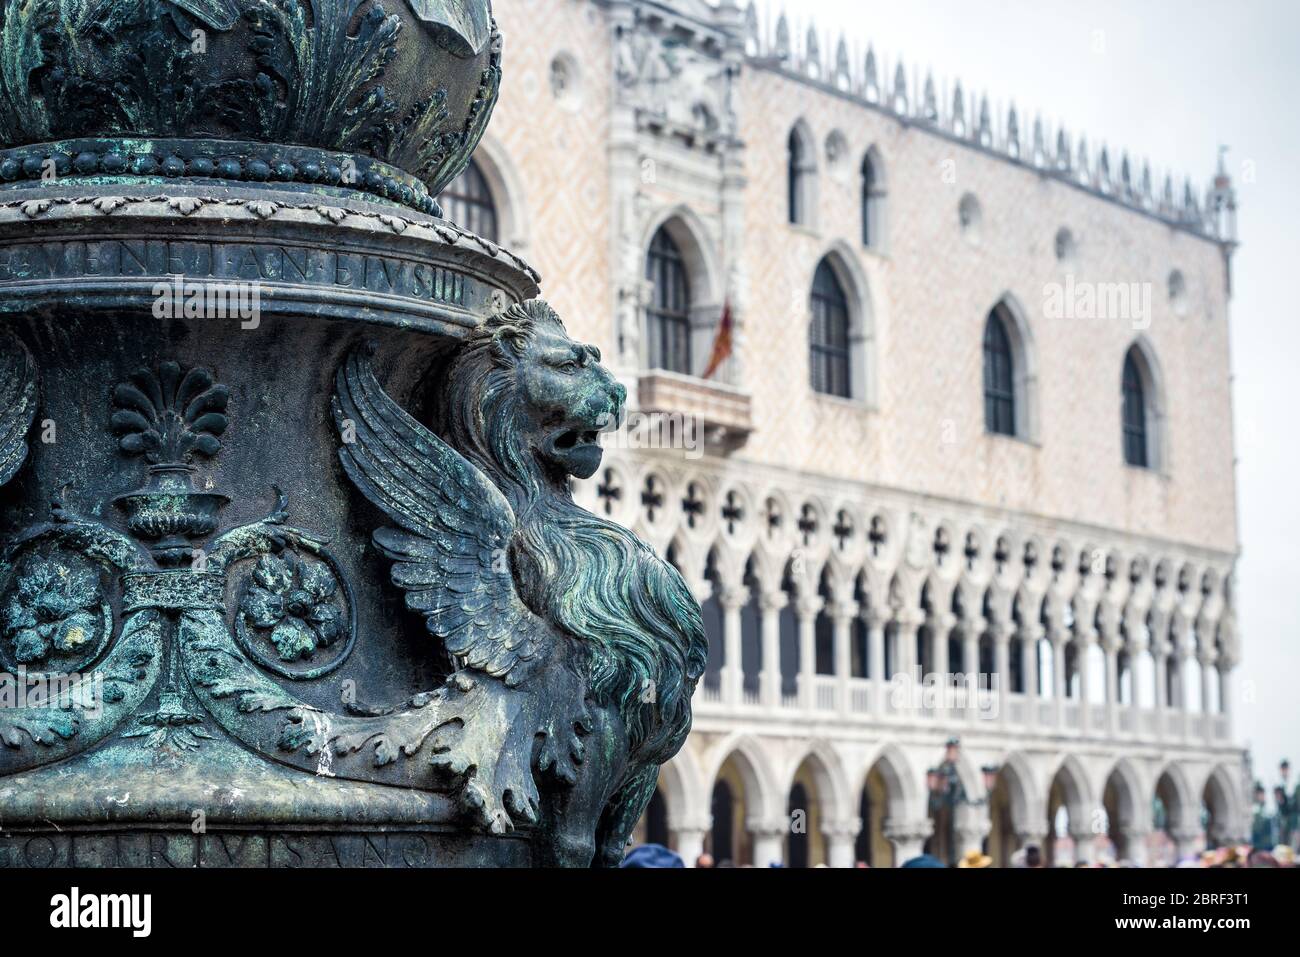 Particolare dell'architettura di Piazza San Marco`s a Venezia. Palazzo Doge`s sullo sfondo. Il leone alato è un simbolo di Venezia. Foto Stock